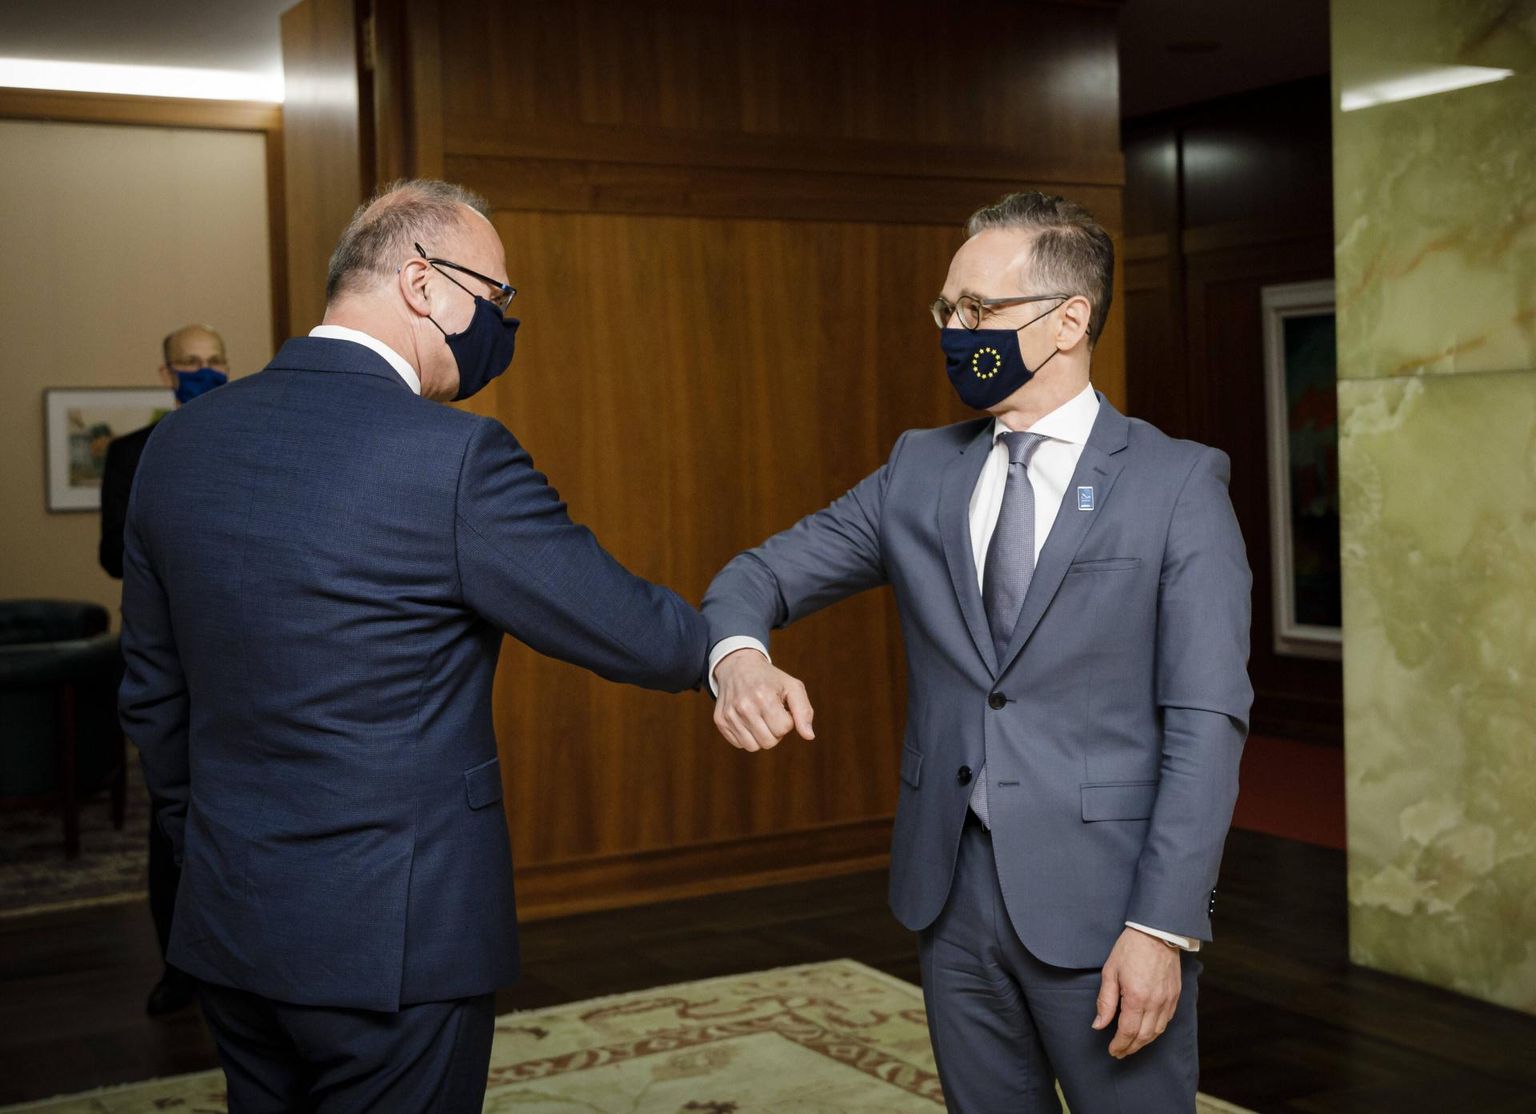 Horvaatia välisminister Gordan Grlić Radman (vasakul) tervitamas eile Euroopa Liidu eesistumise teatepulga üle võtnud Saksamaa välisministrit Heiko Maasi Berliinis.